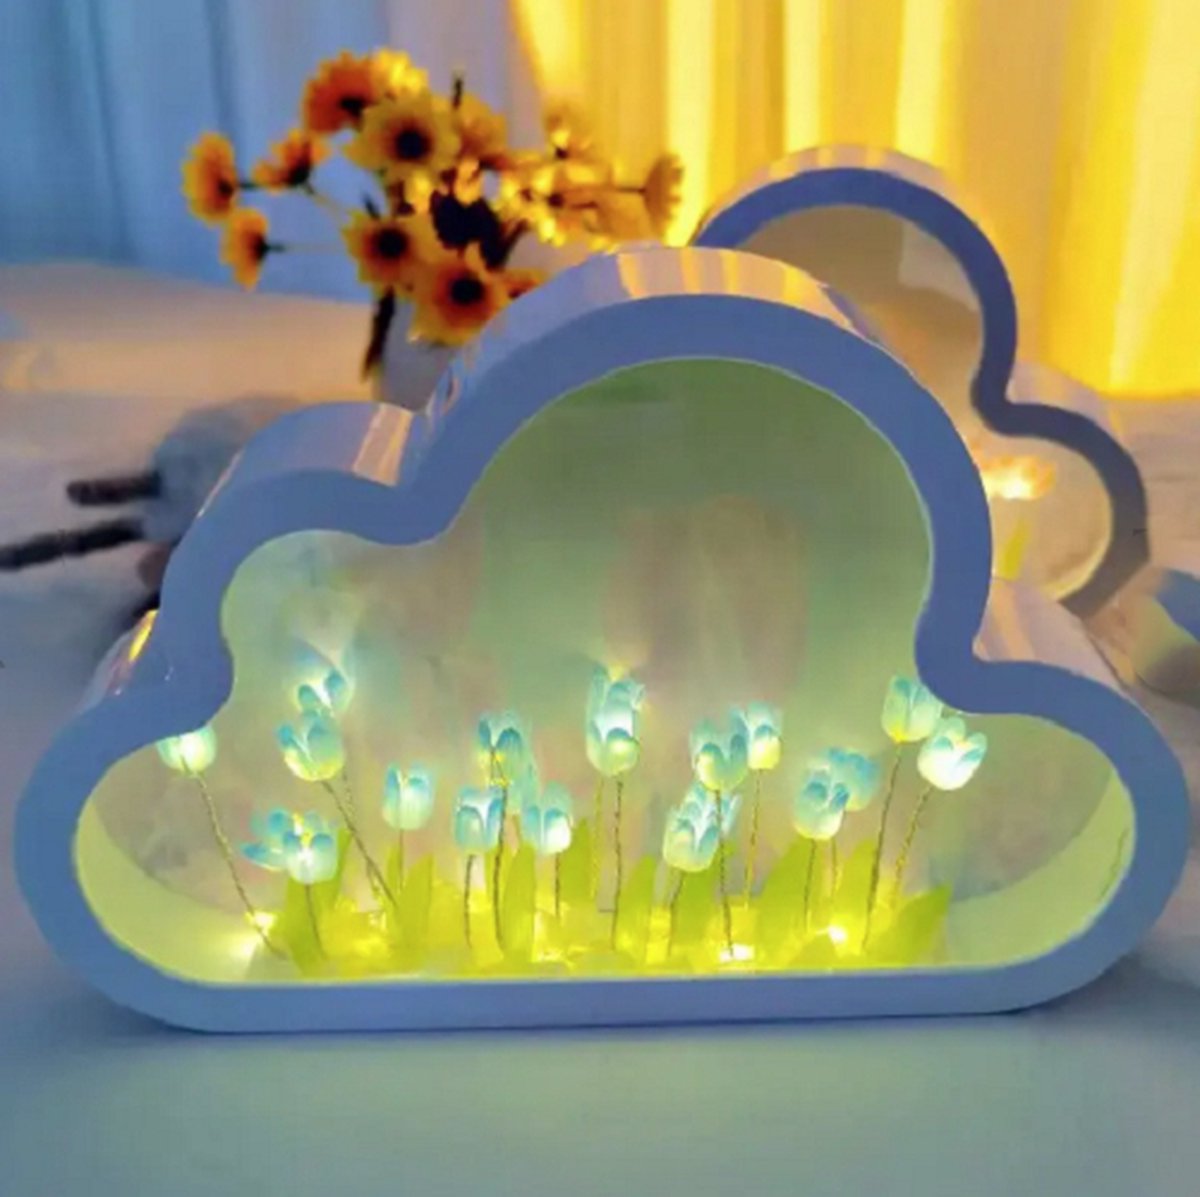 Lampe miroir DIY Cloud Tulip - Blauw, Lampe Miroir Veilleuse Fleur de Tulip  Nuage DIY